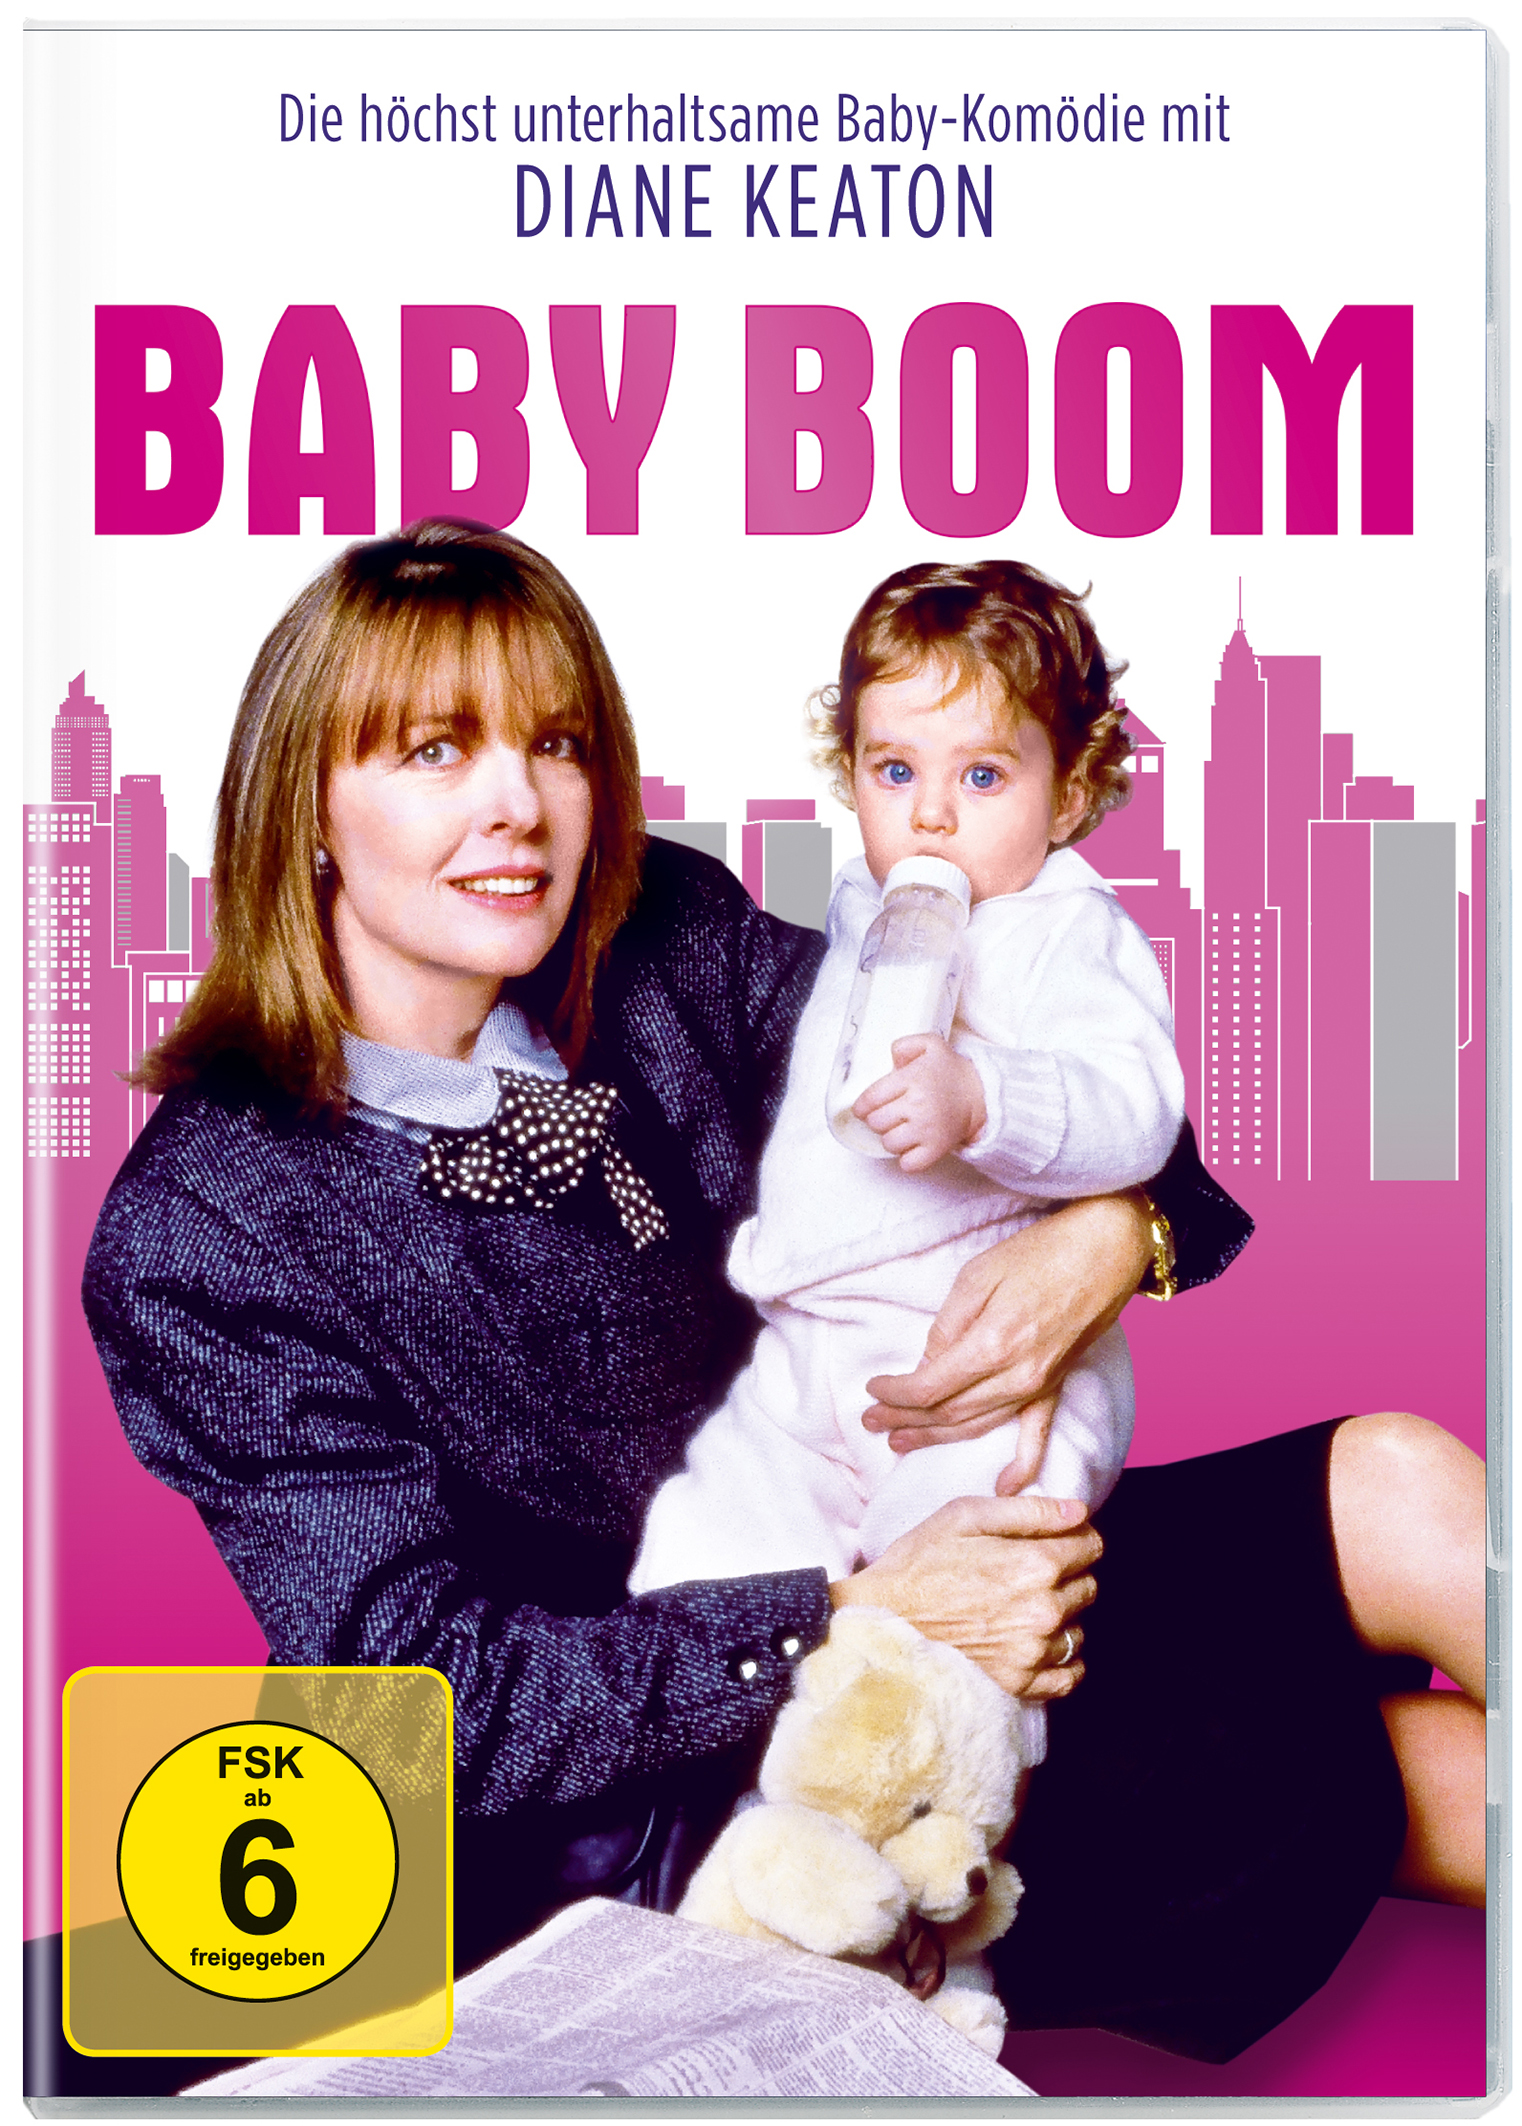 Bescherung Baby Boom Eine DVD schöne -